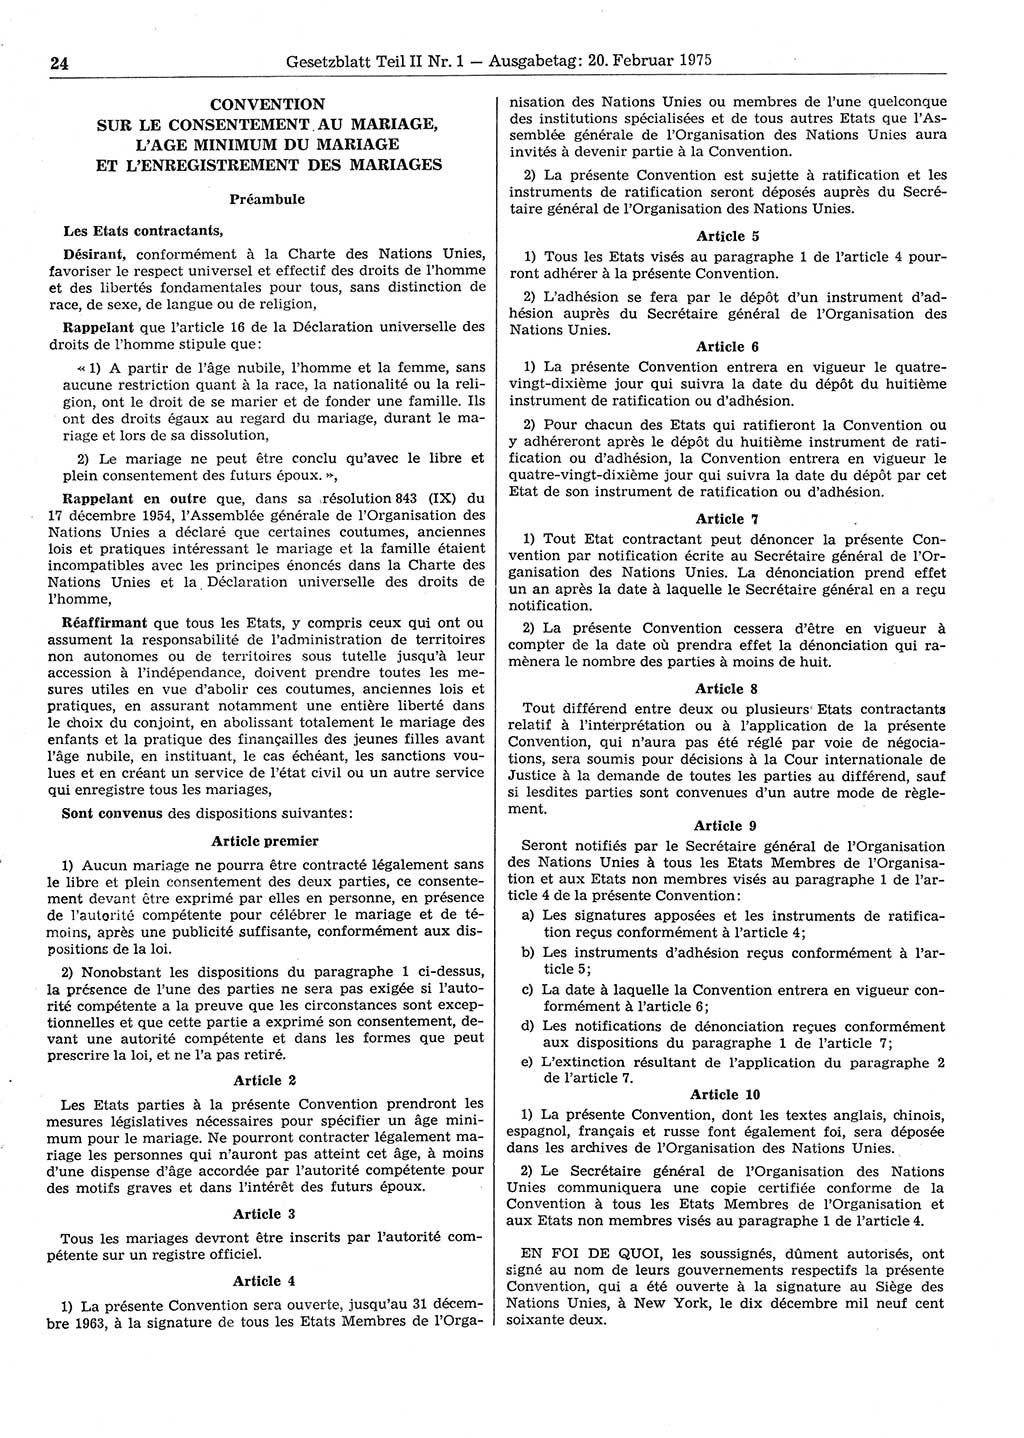 Gesetzblatt (GBl.) der Deutschen Demokratischen Republik (DDR) Teil ⅠⅠ 1975, Seite 24 (GBl. DDR ⅠⅠ 1975, S. 24)